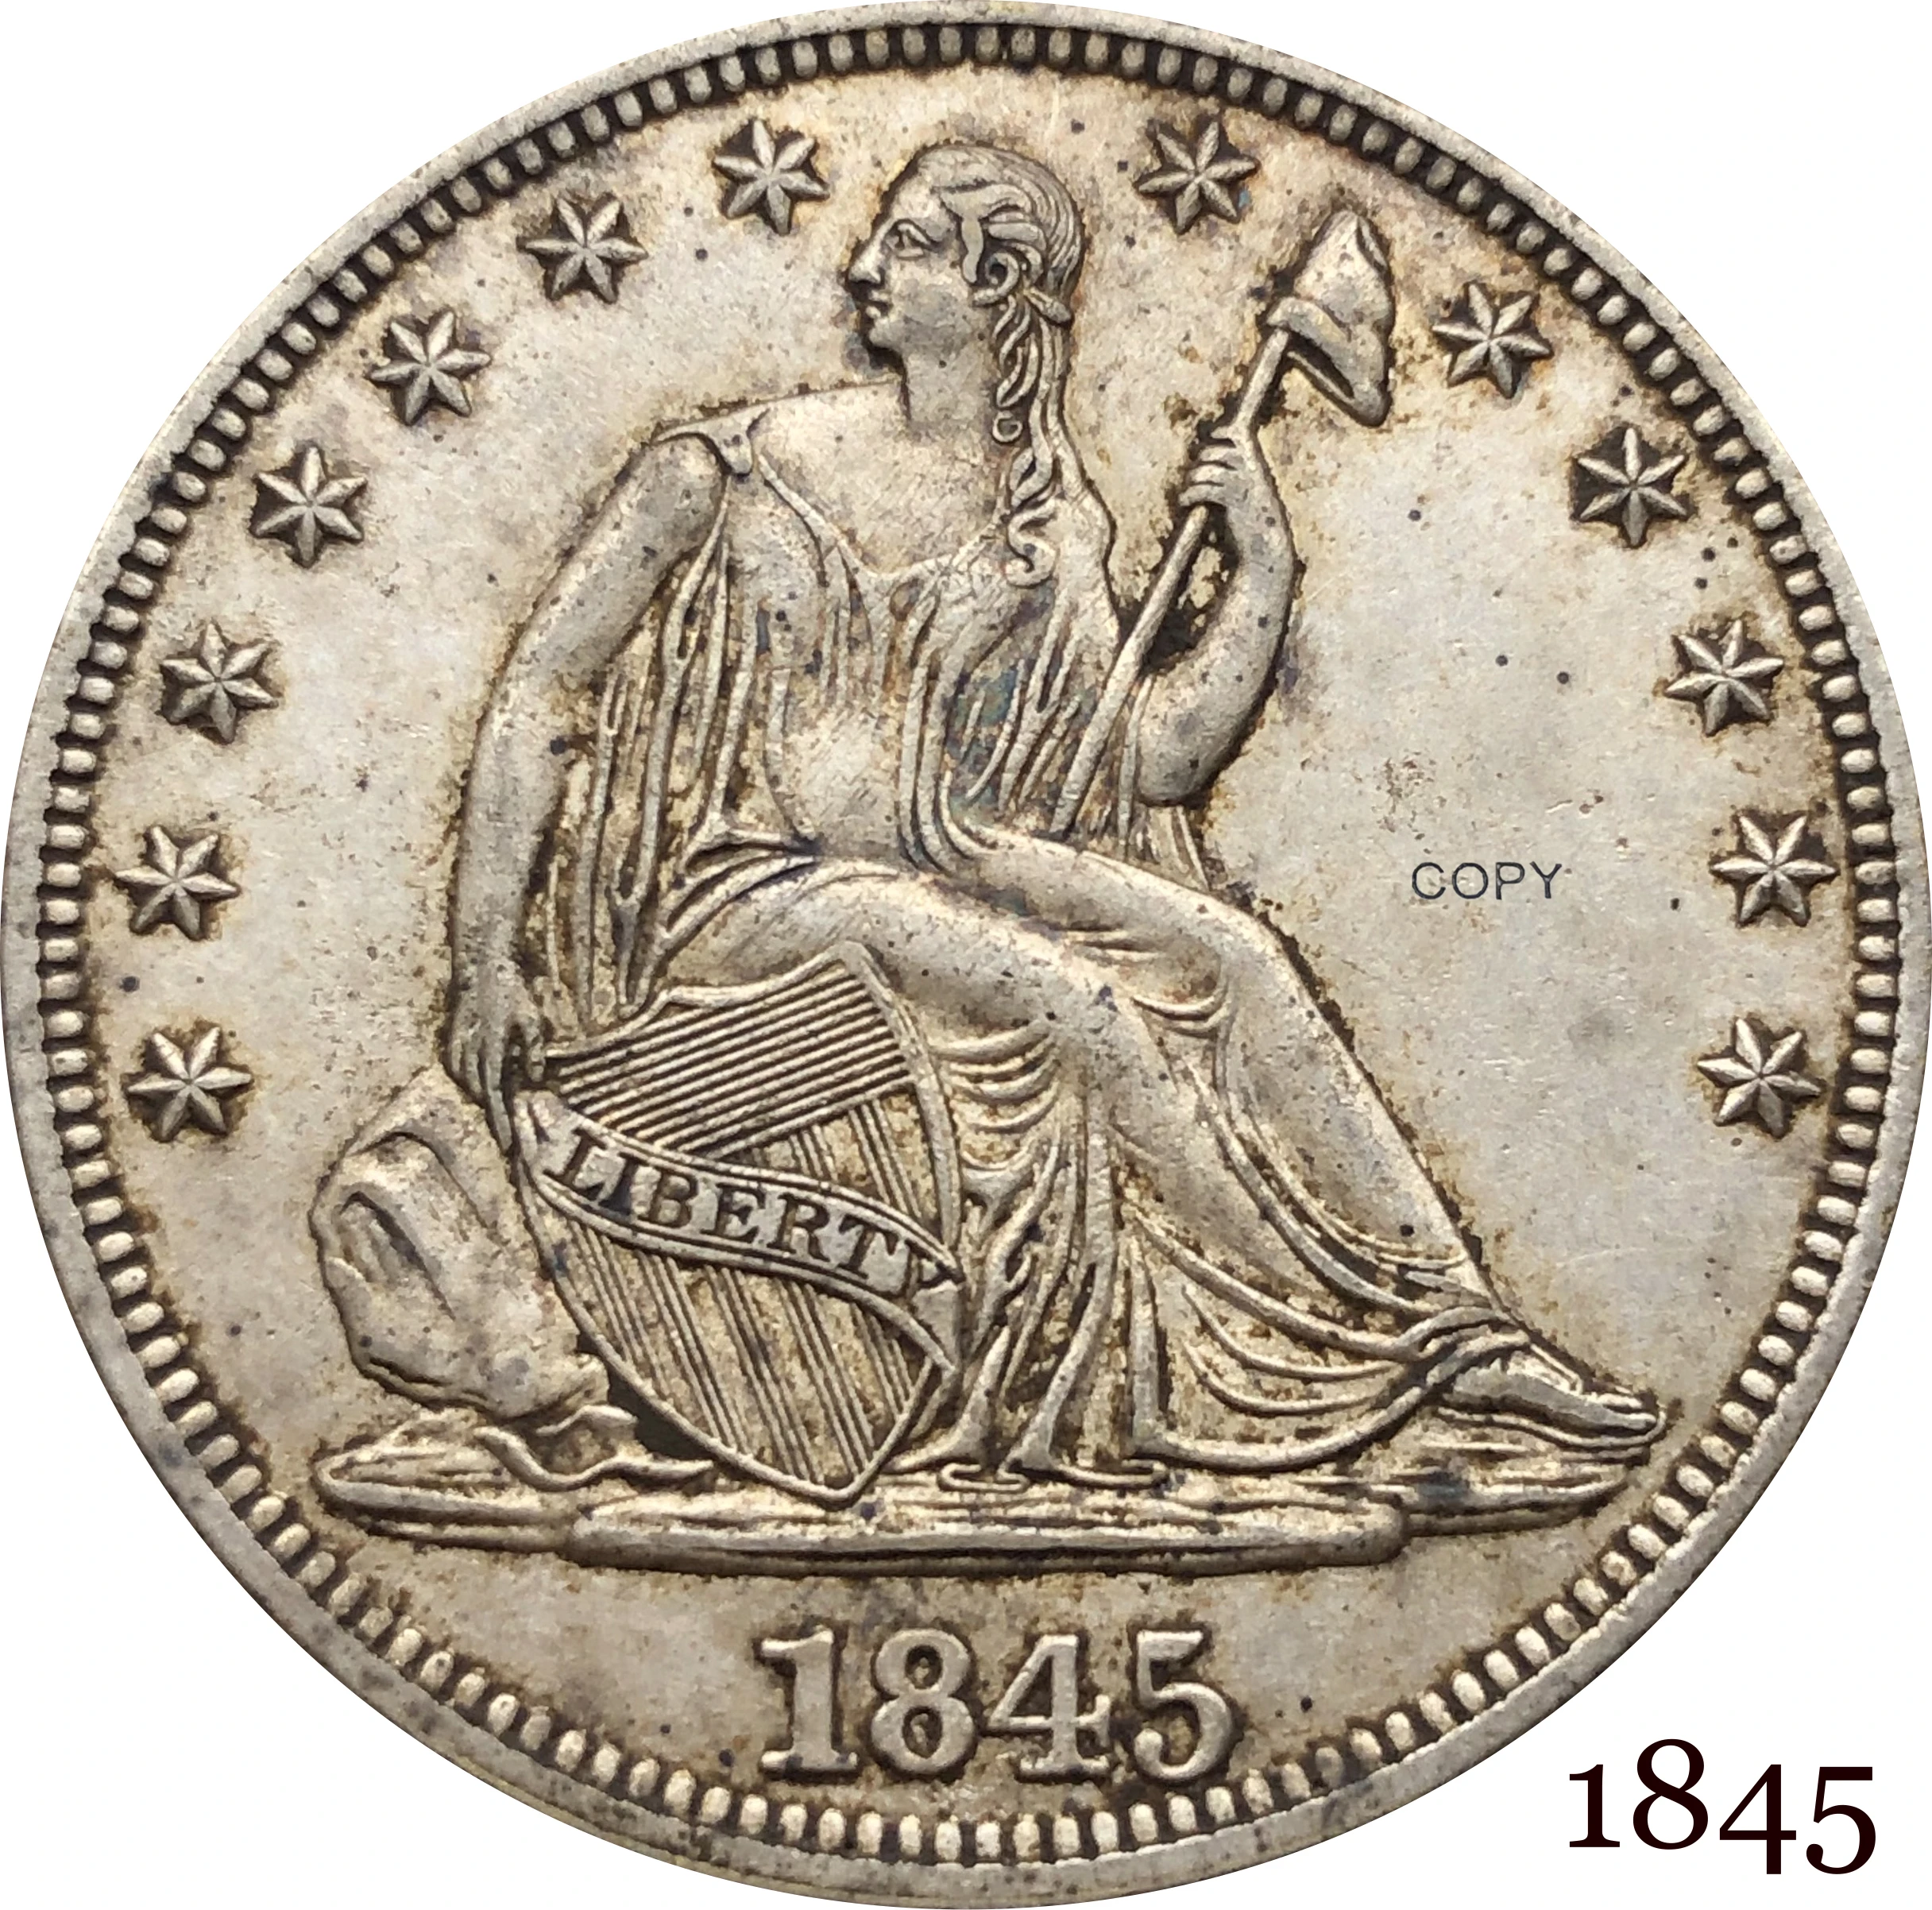 

Соединенные Штаты Америки, США, 1845 долларов США, 1/2, сидение, свобода, половина доллара, купроникель, Посеребренная копия под орлом, монета бе...